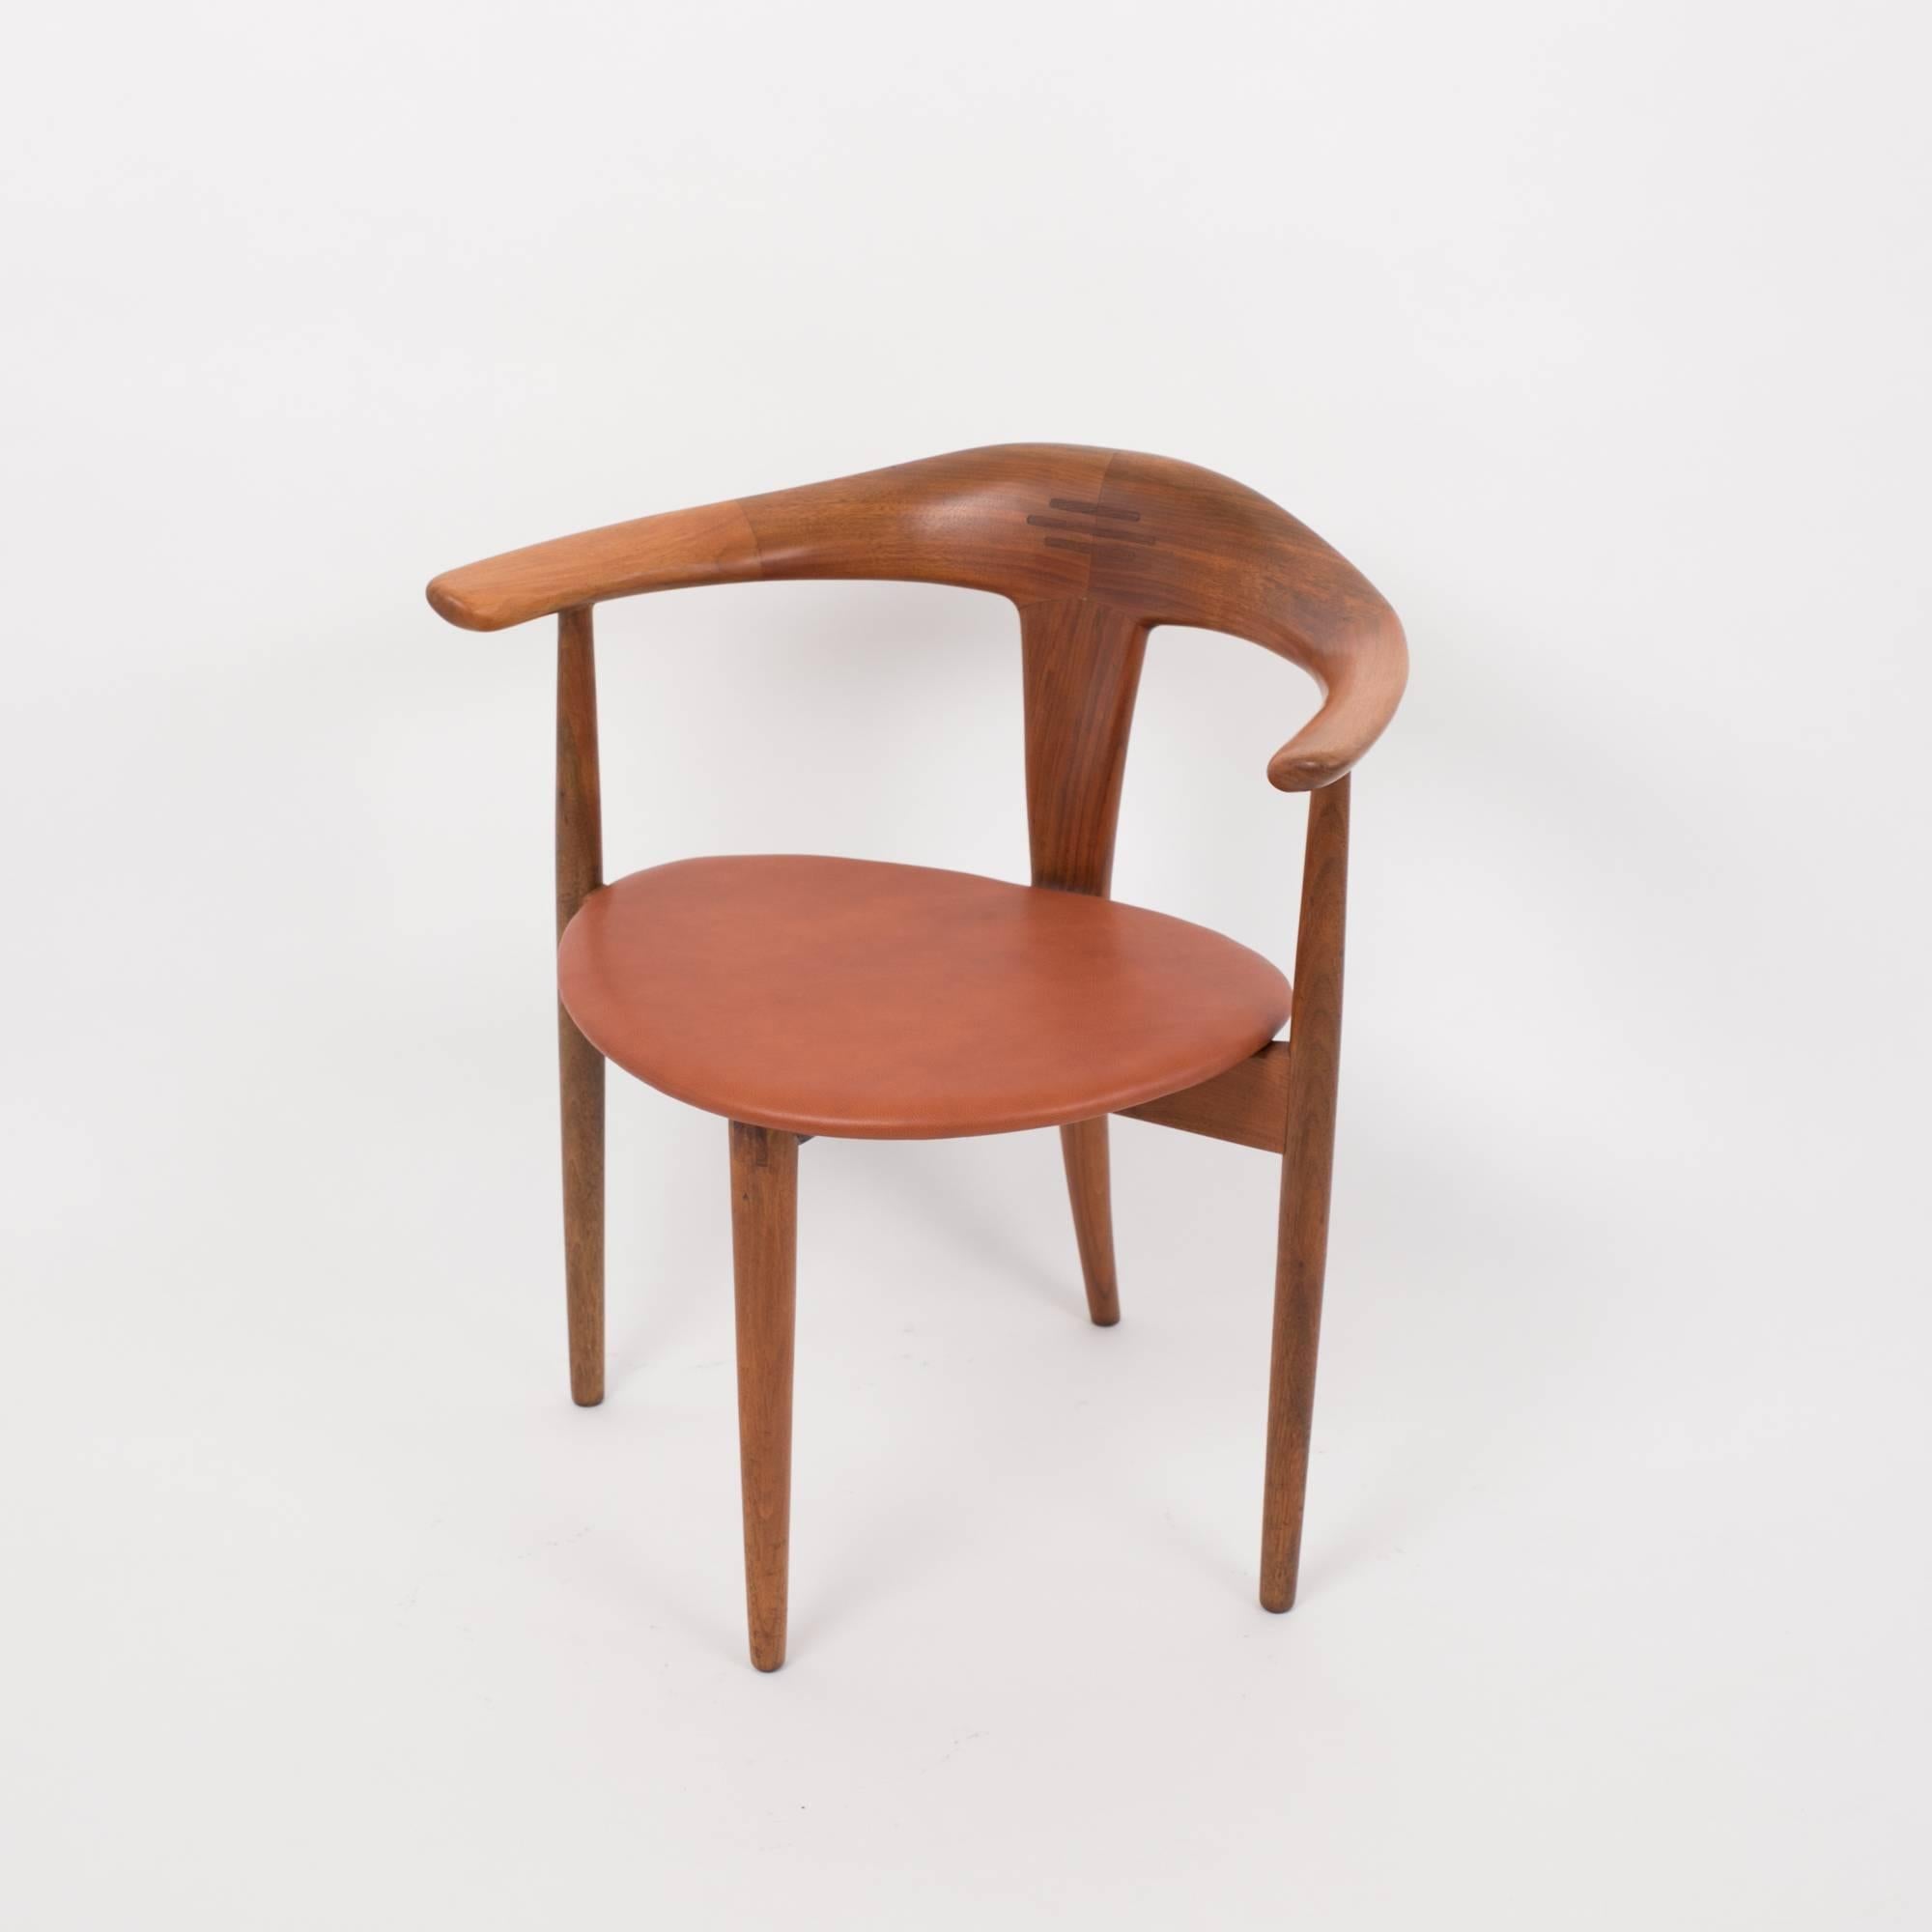 Leather Single Teak Accent Chair by Pelle Pedersen and Erik Andersen for Randers/Moreddi